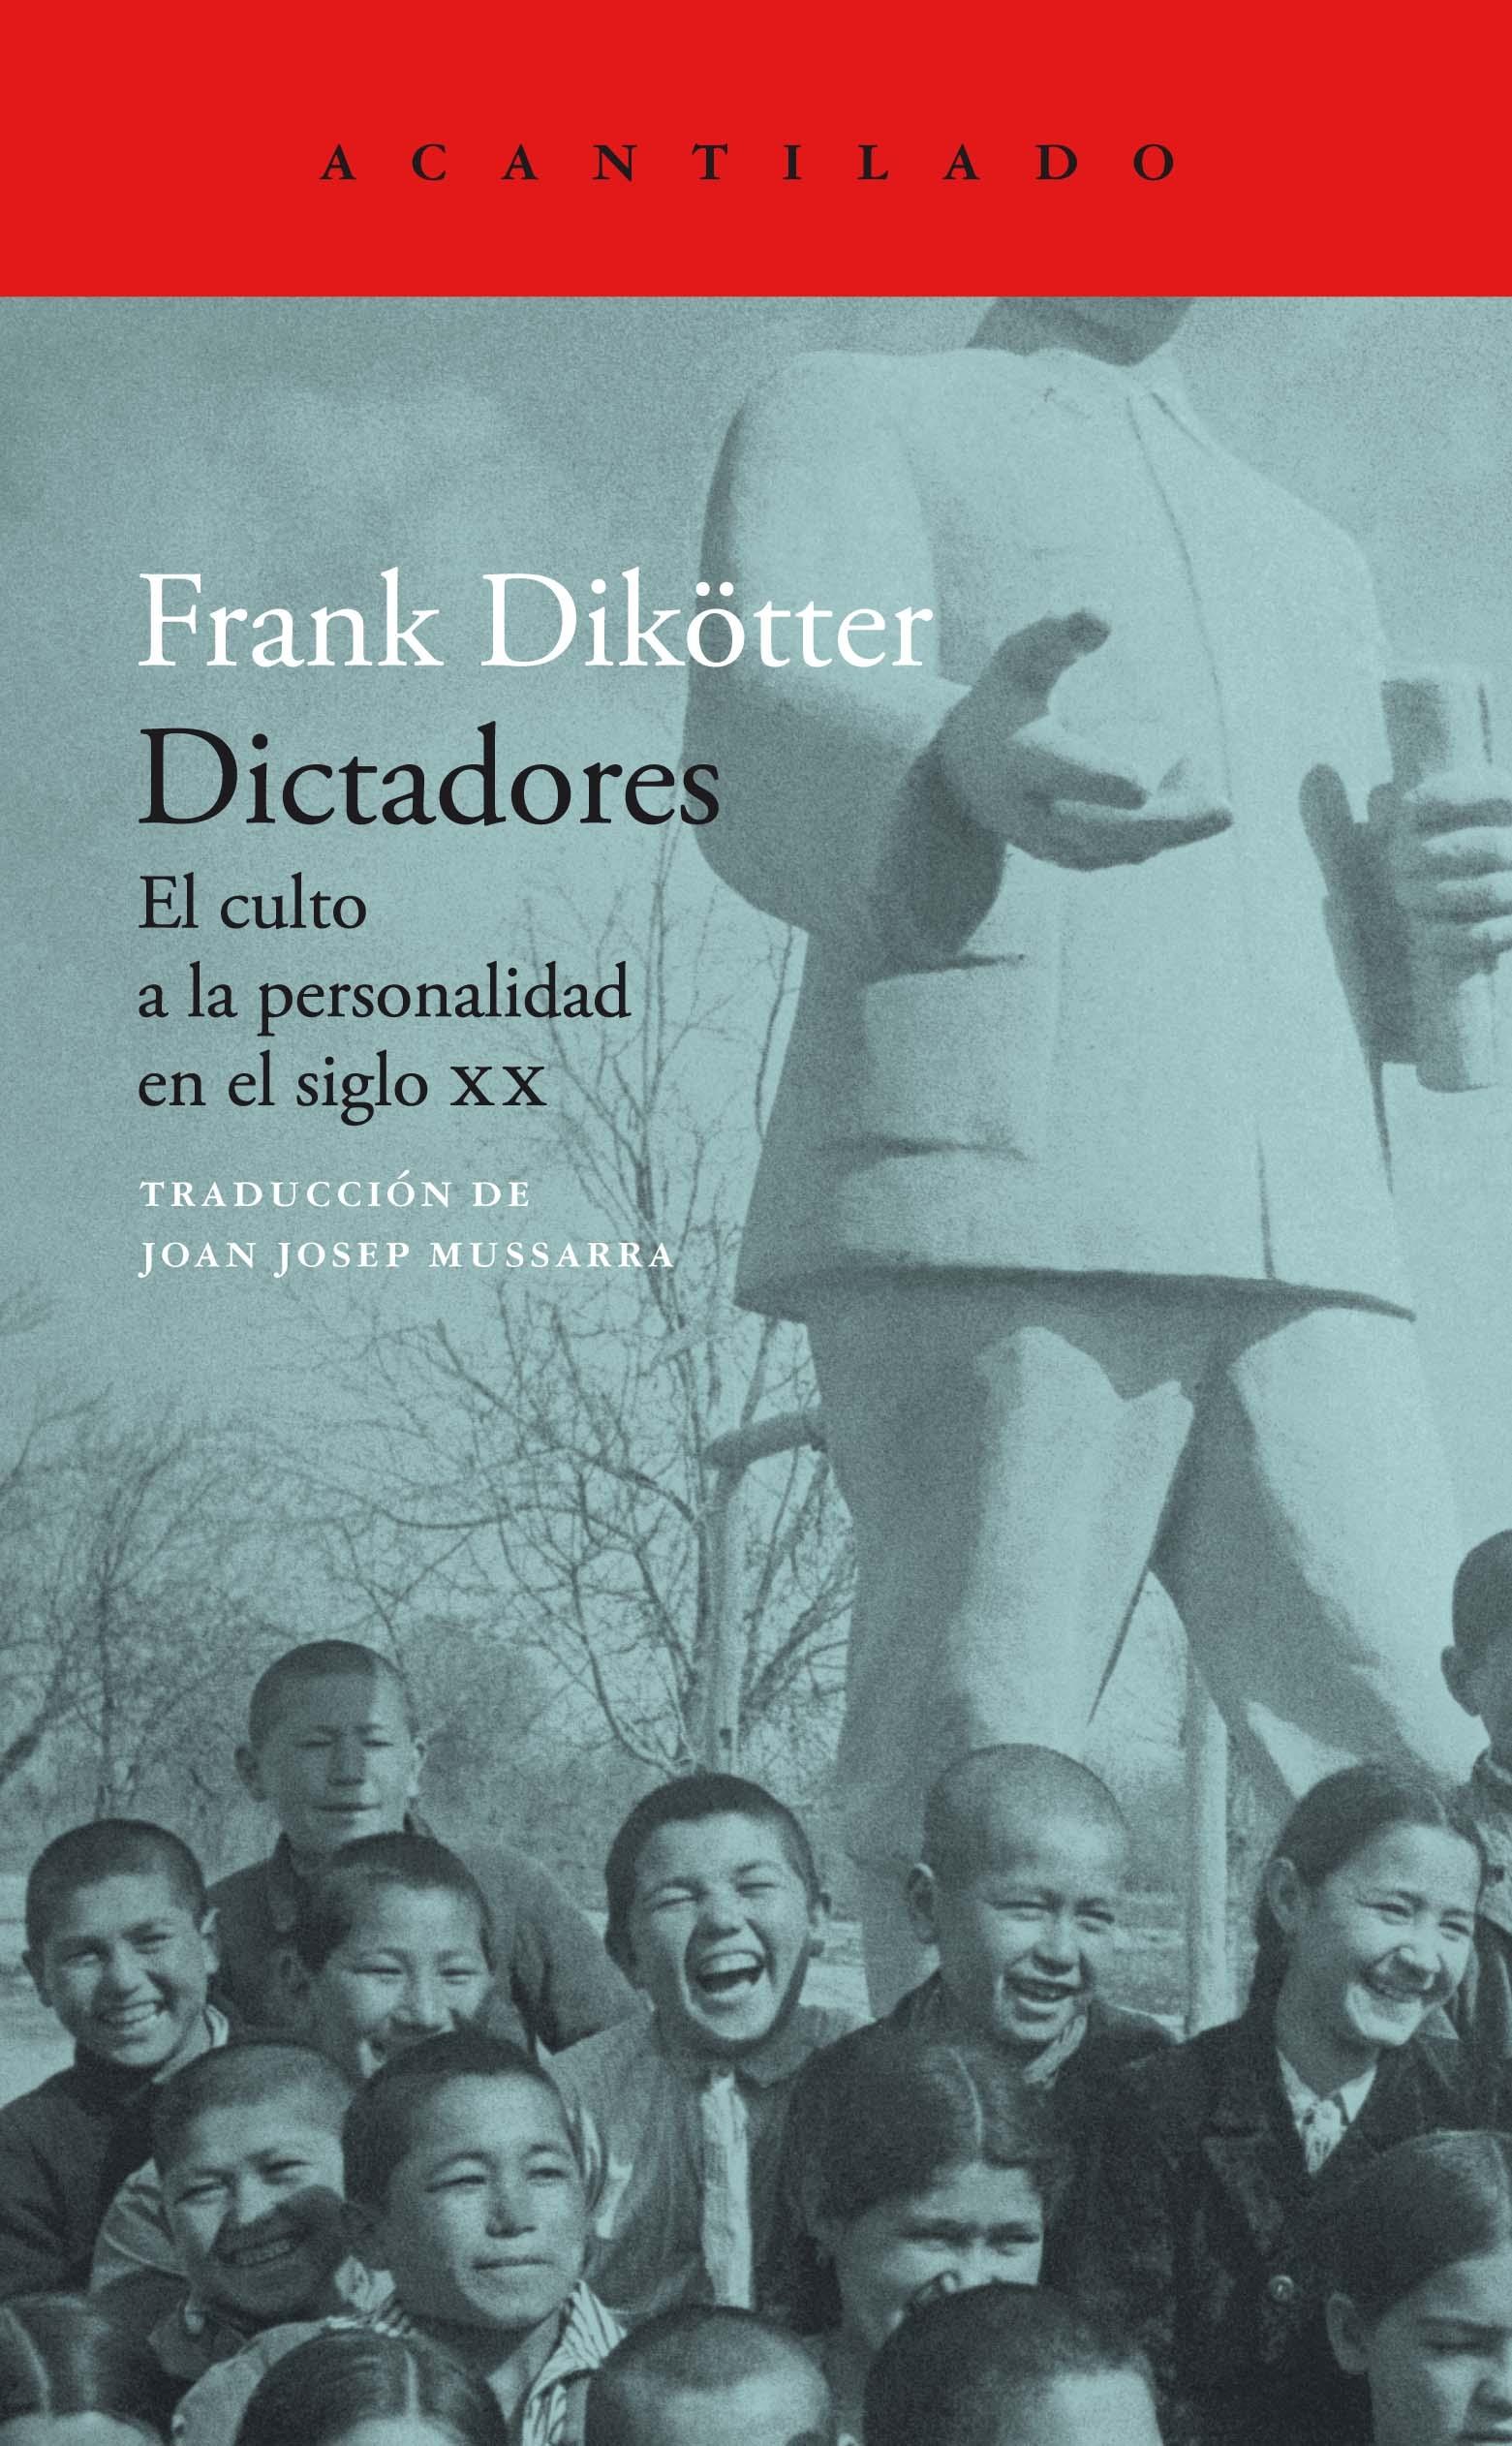 Dictadores "El culto a la personalidad en el siglo XX"